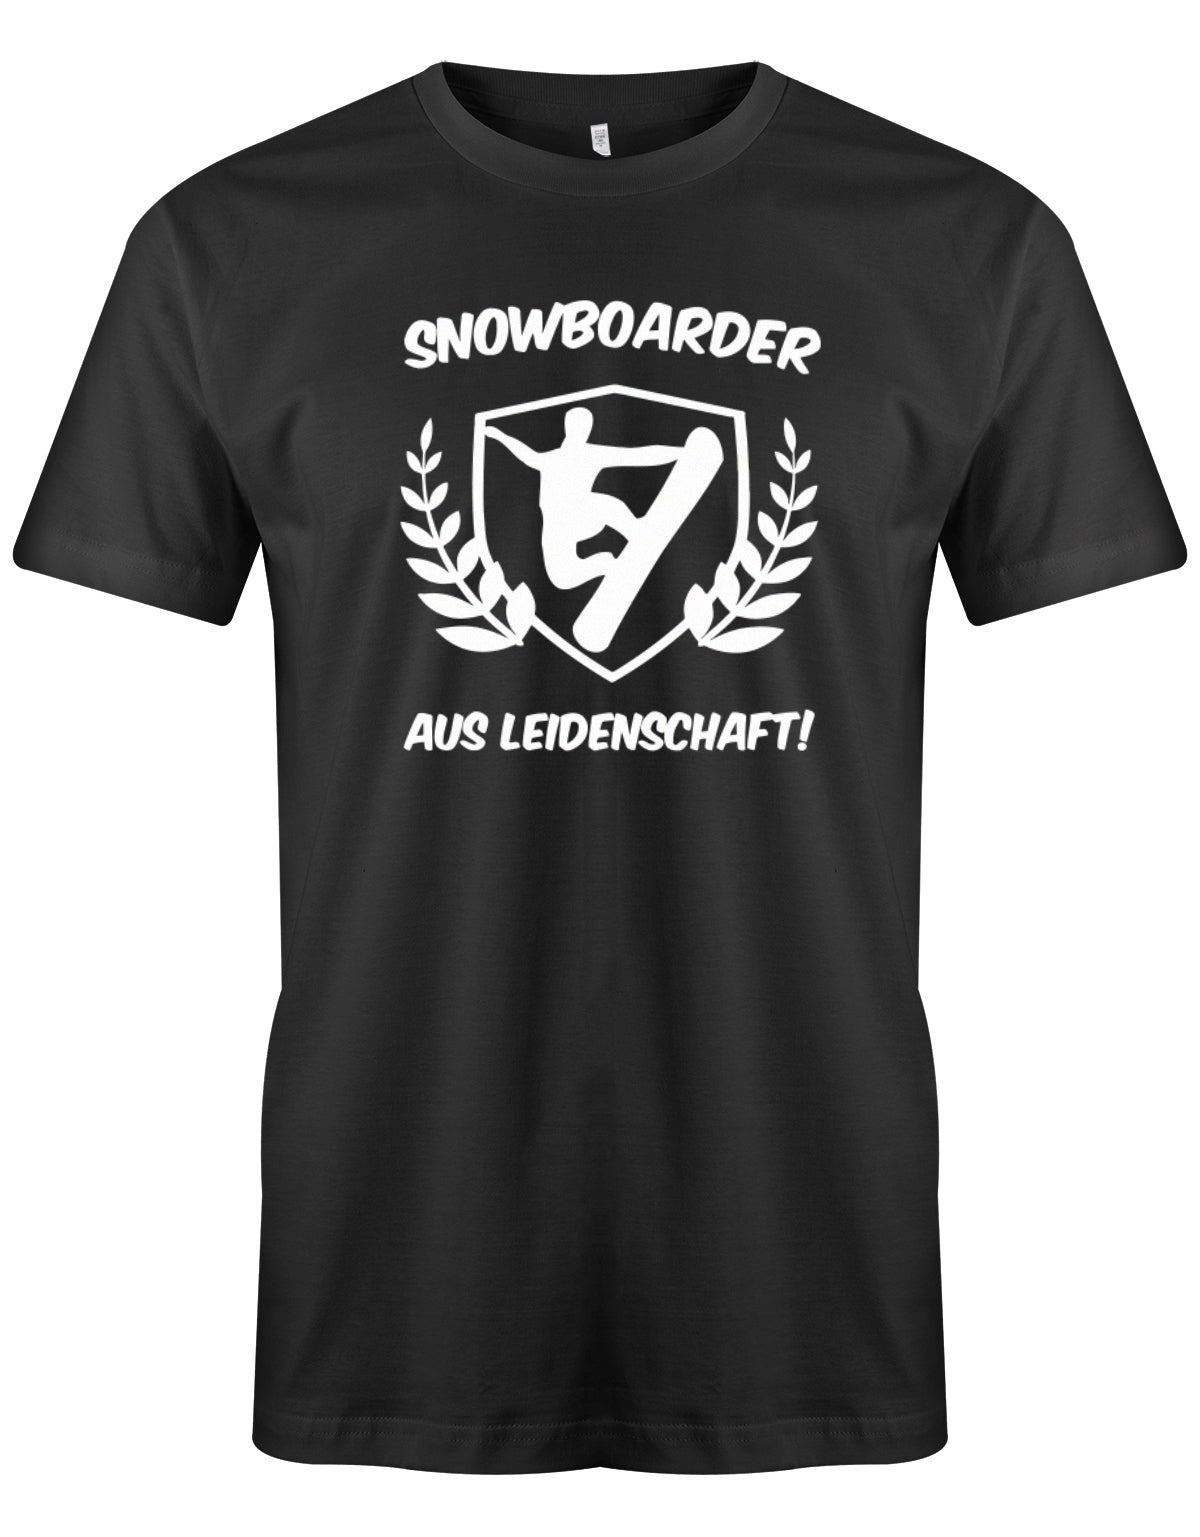 herren-shirt-schwarzgLRWDr263ZLEF